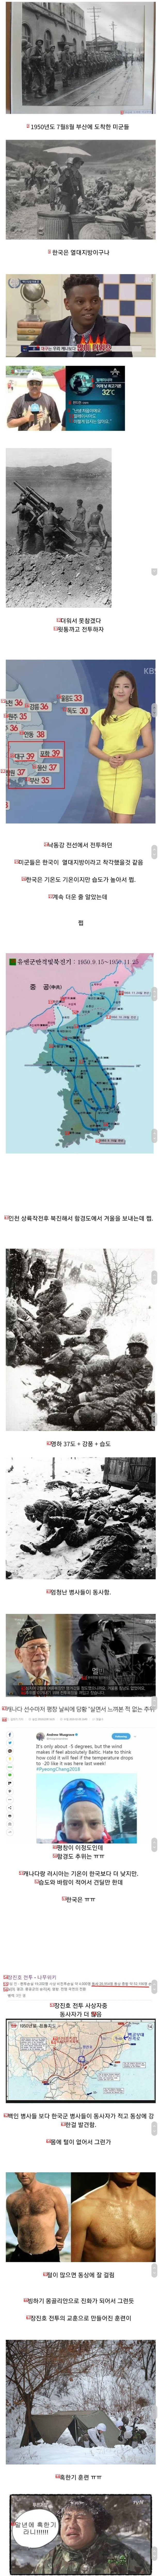 한국의 사계절에 당황한 미군들